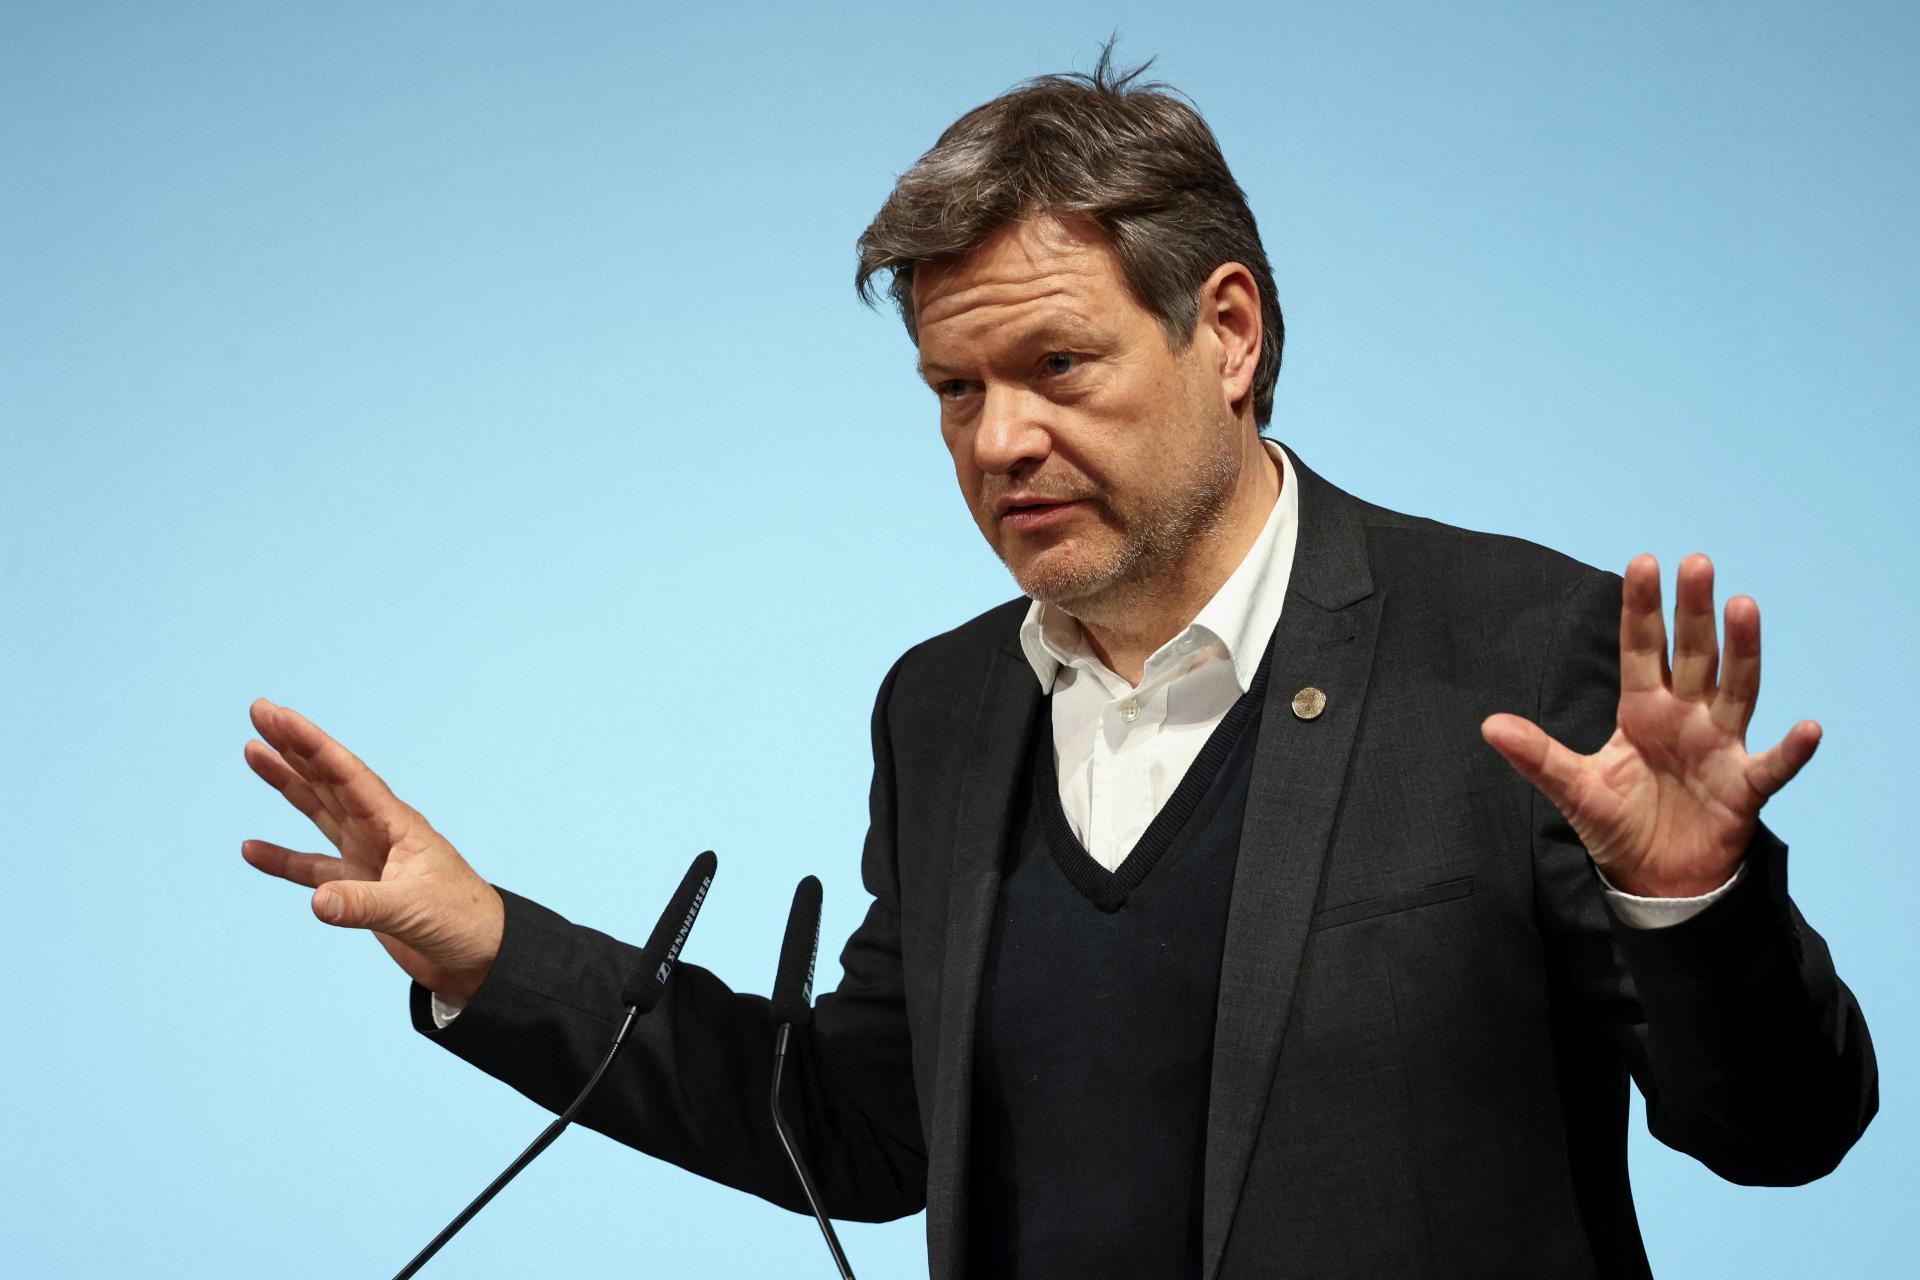 Nemecký minister hospodárstva čelí kritike, že vedel o dopadoch odchodu od jadra. Opozícia chce vyšetrovanie